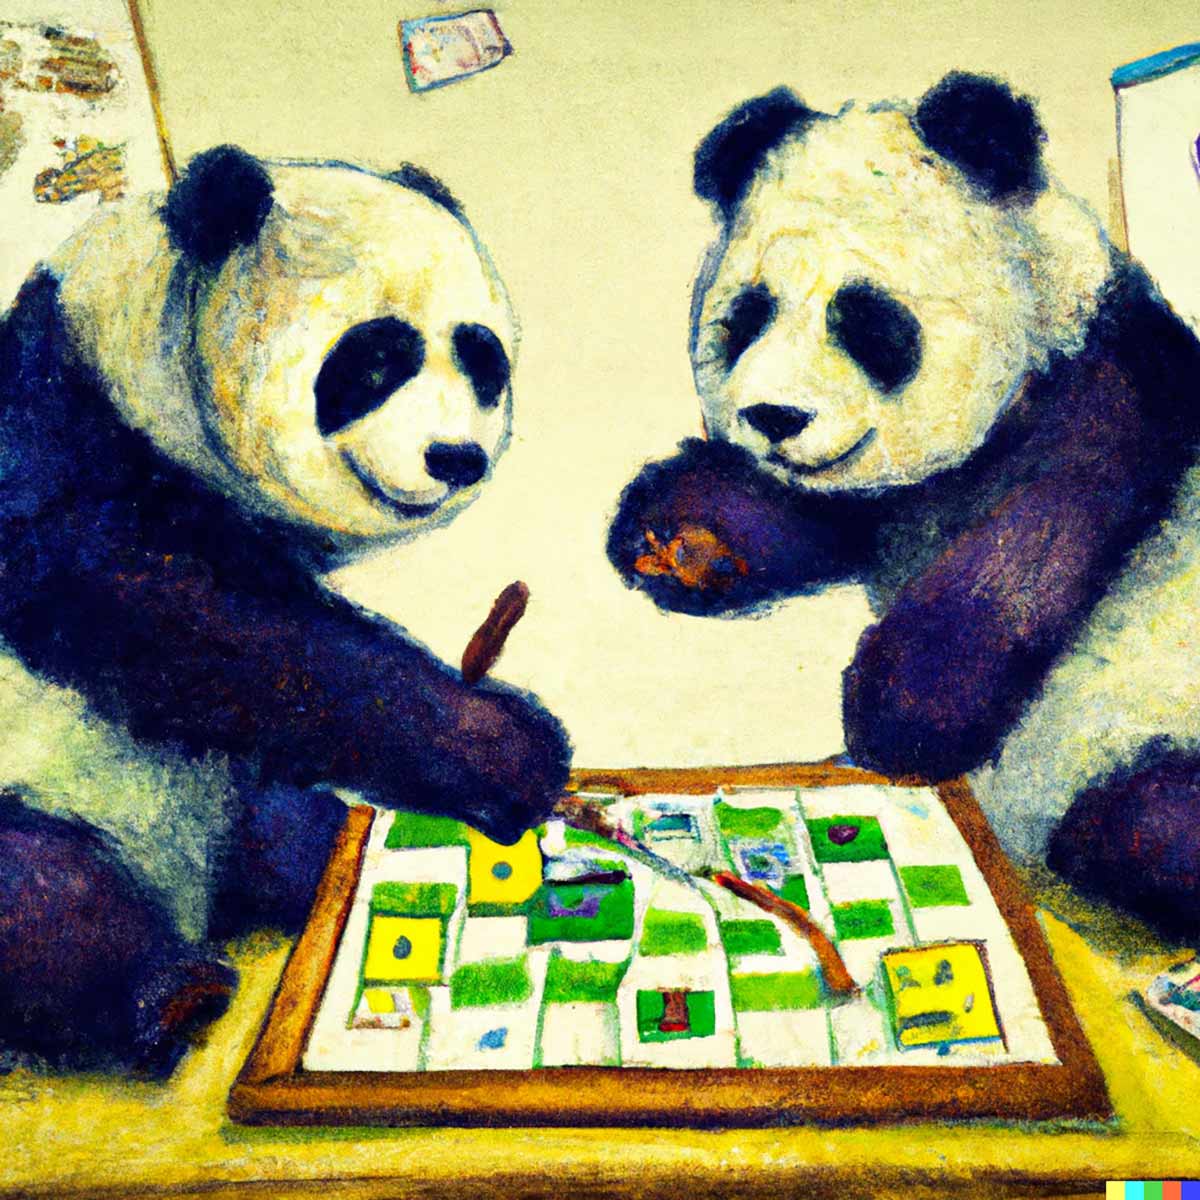 Pandas vergnügen sich mit Spieletipp, generiert mit dall-e